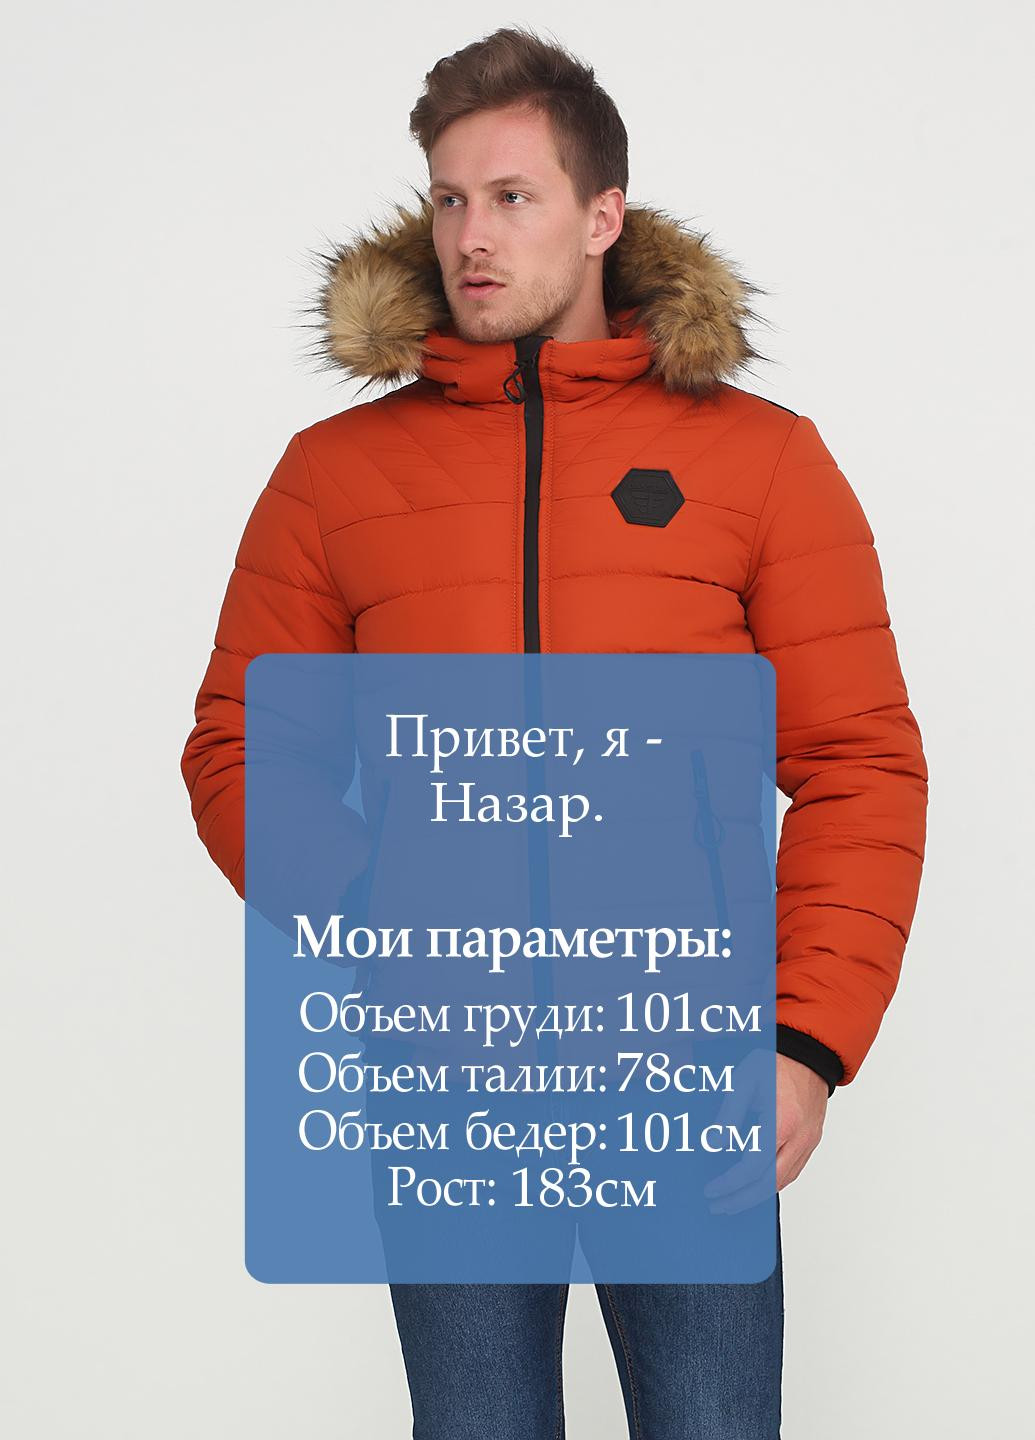 Оранжевая зимняя куртка Man's Wear